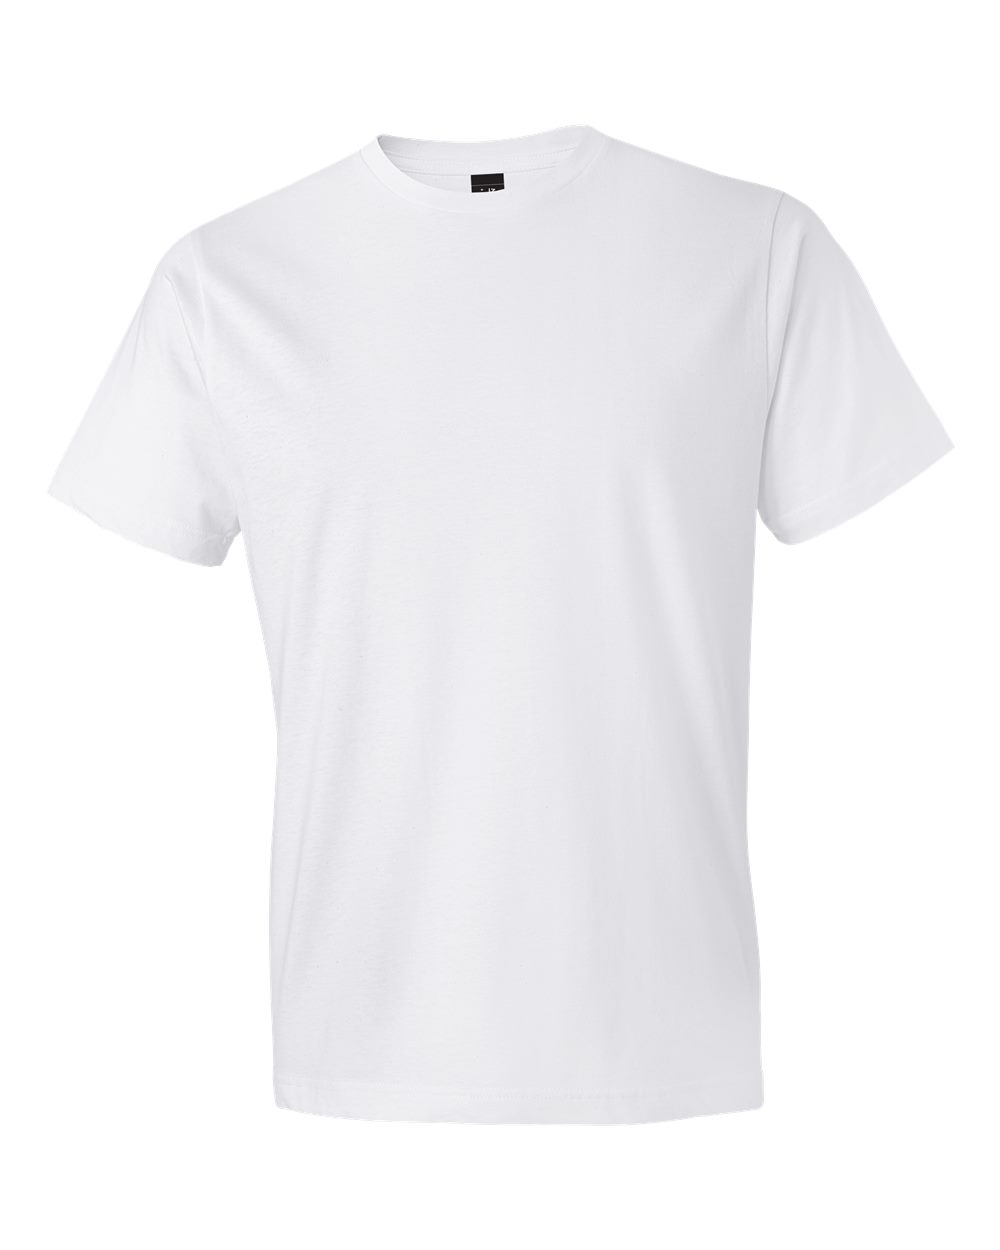 Pretreated Gildan 980 Lightweight T-Shirt